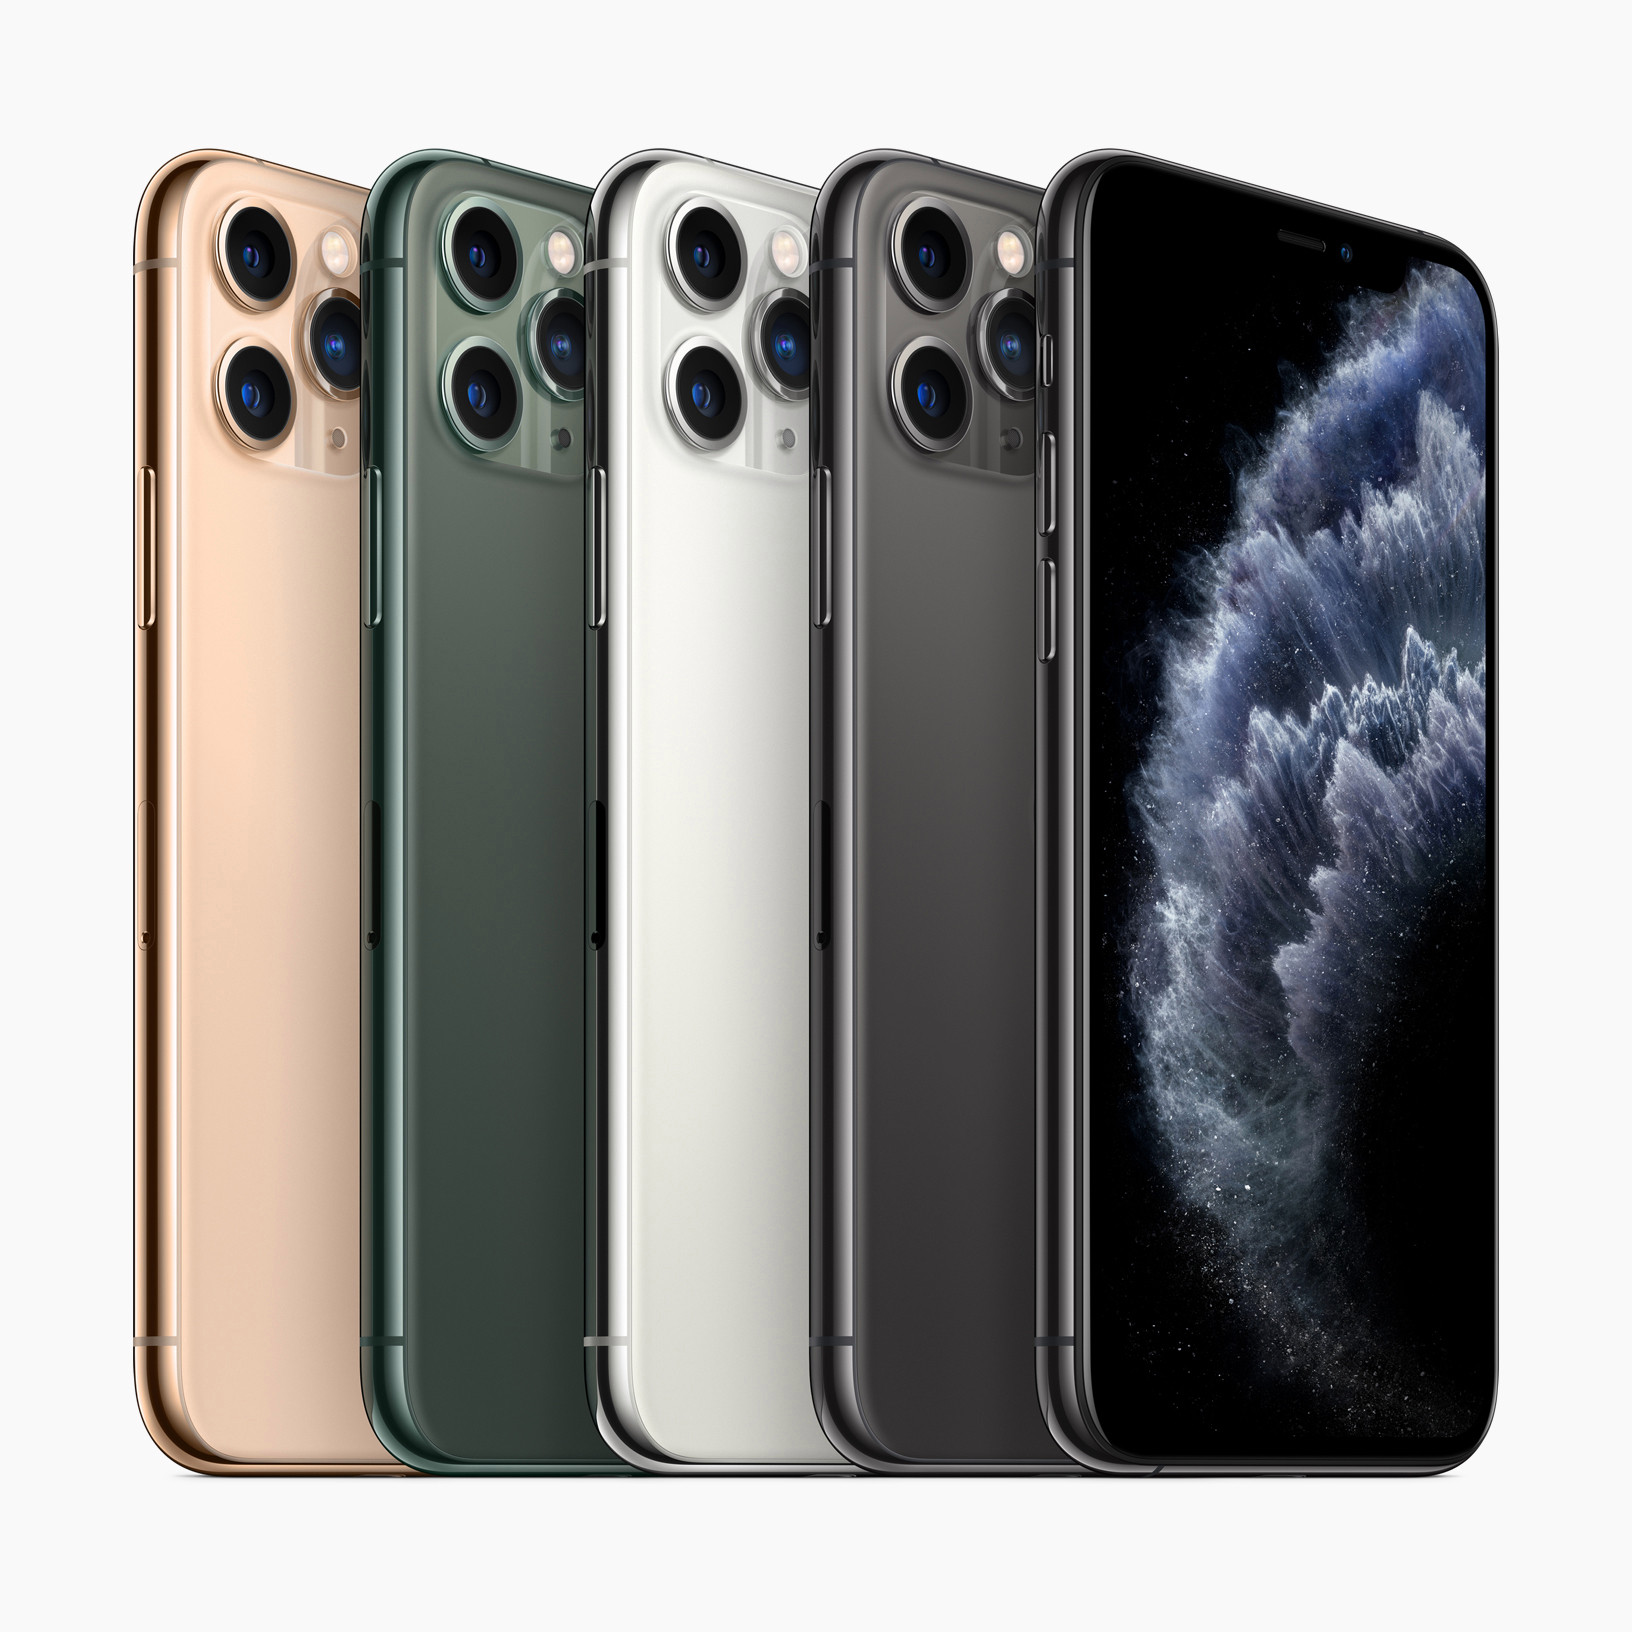  iPhone 11 Pro memiliki 'kaca terberat yang pernah ada di smartphone' di bagian depan dan belakang, menurut Apple CEO Tim Cook